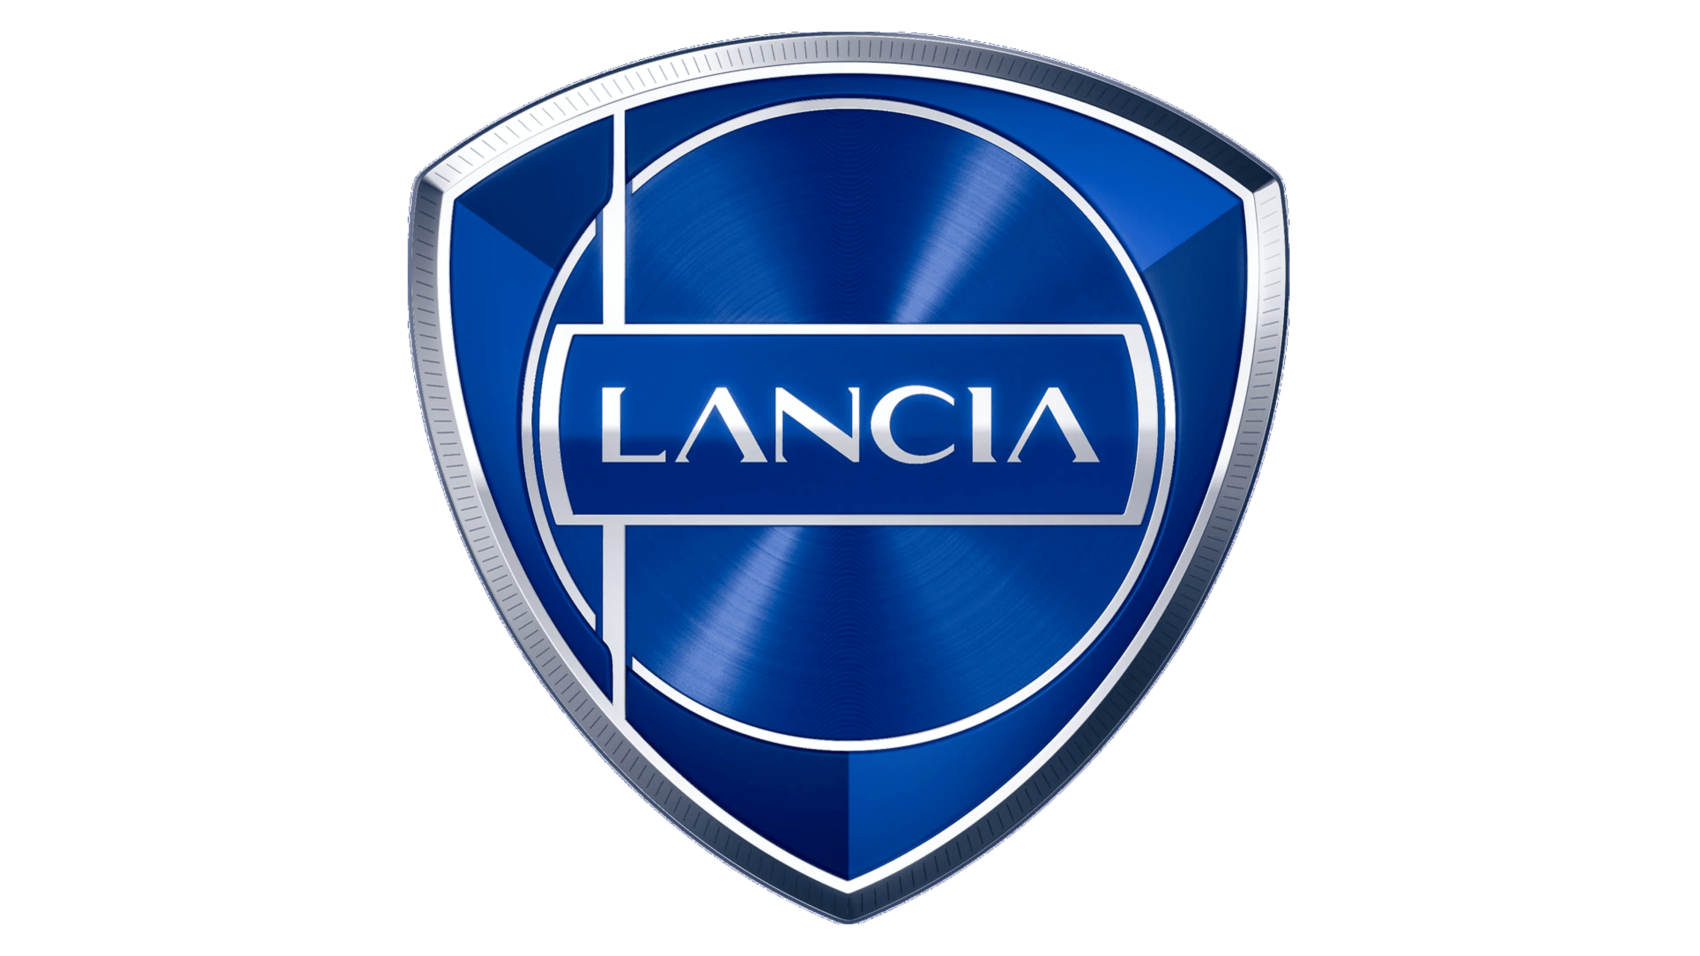 A Lancia visszatérése a WRC-be várhatóan legkorábban 2027-ben